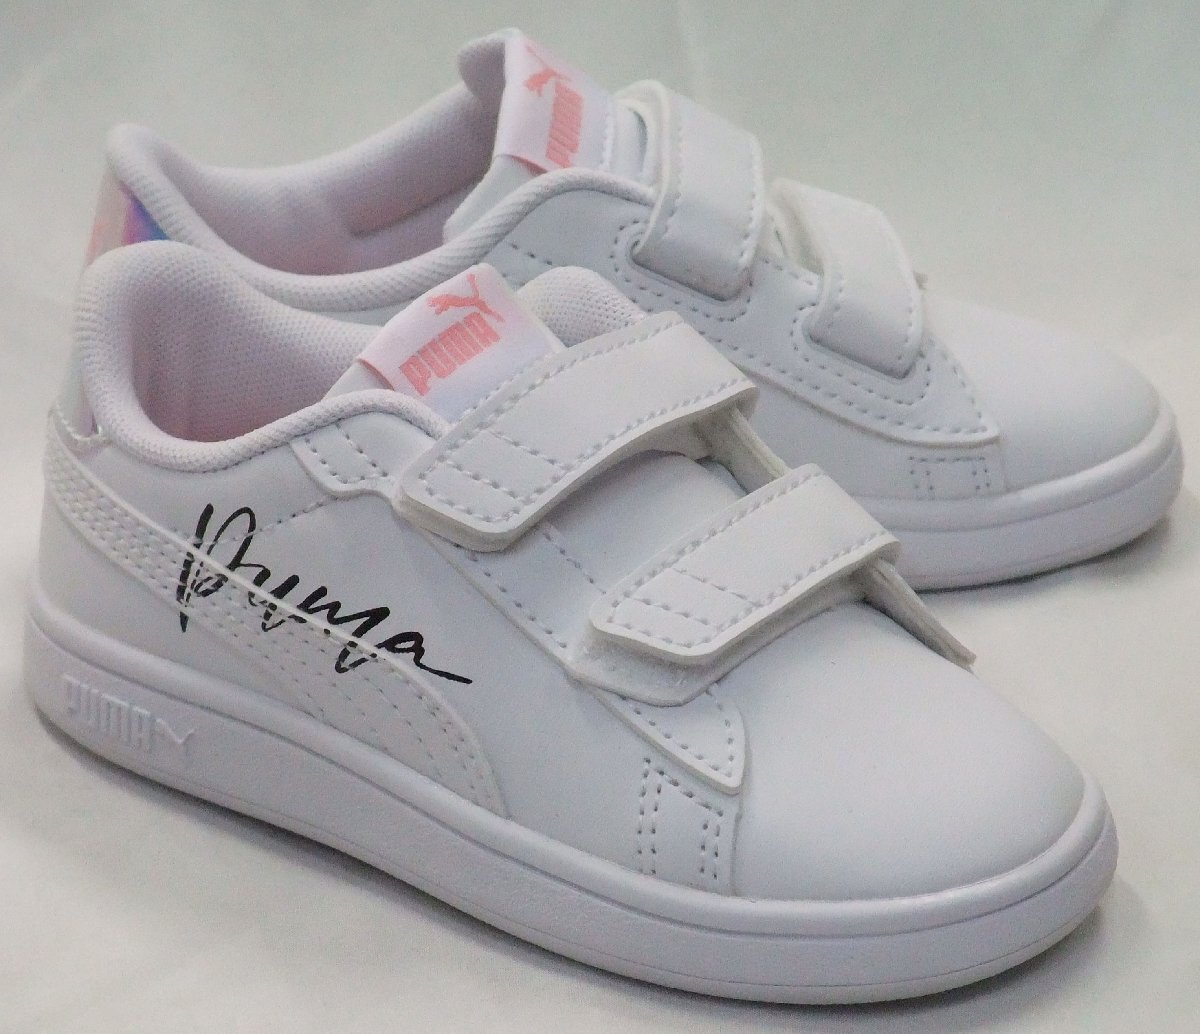 бесплатная доставка puma puma smash 3.0 л кристалл крыло белый/розовый 15см 2 липучка velcro детские кроссовки детская обувь